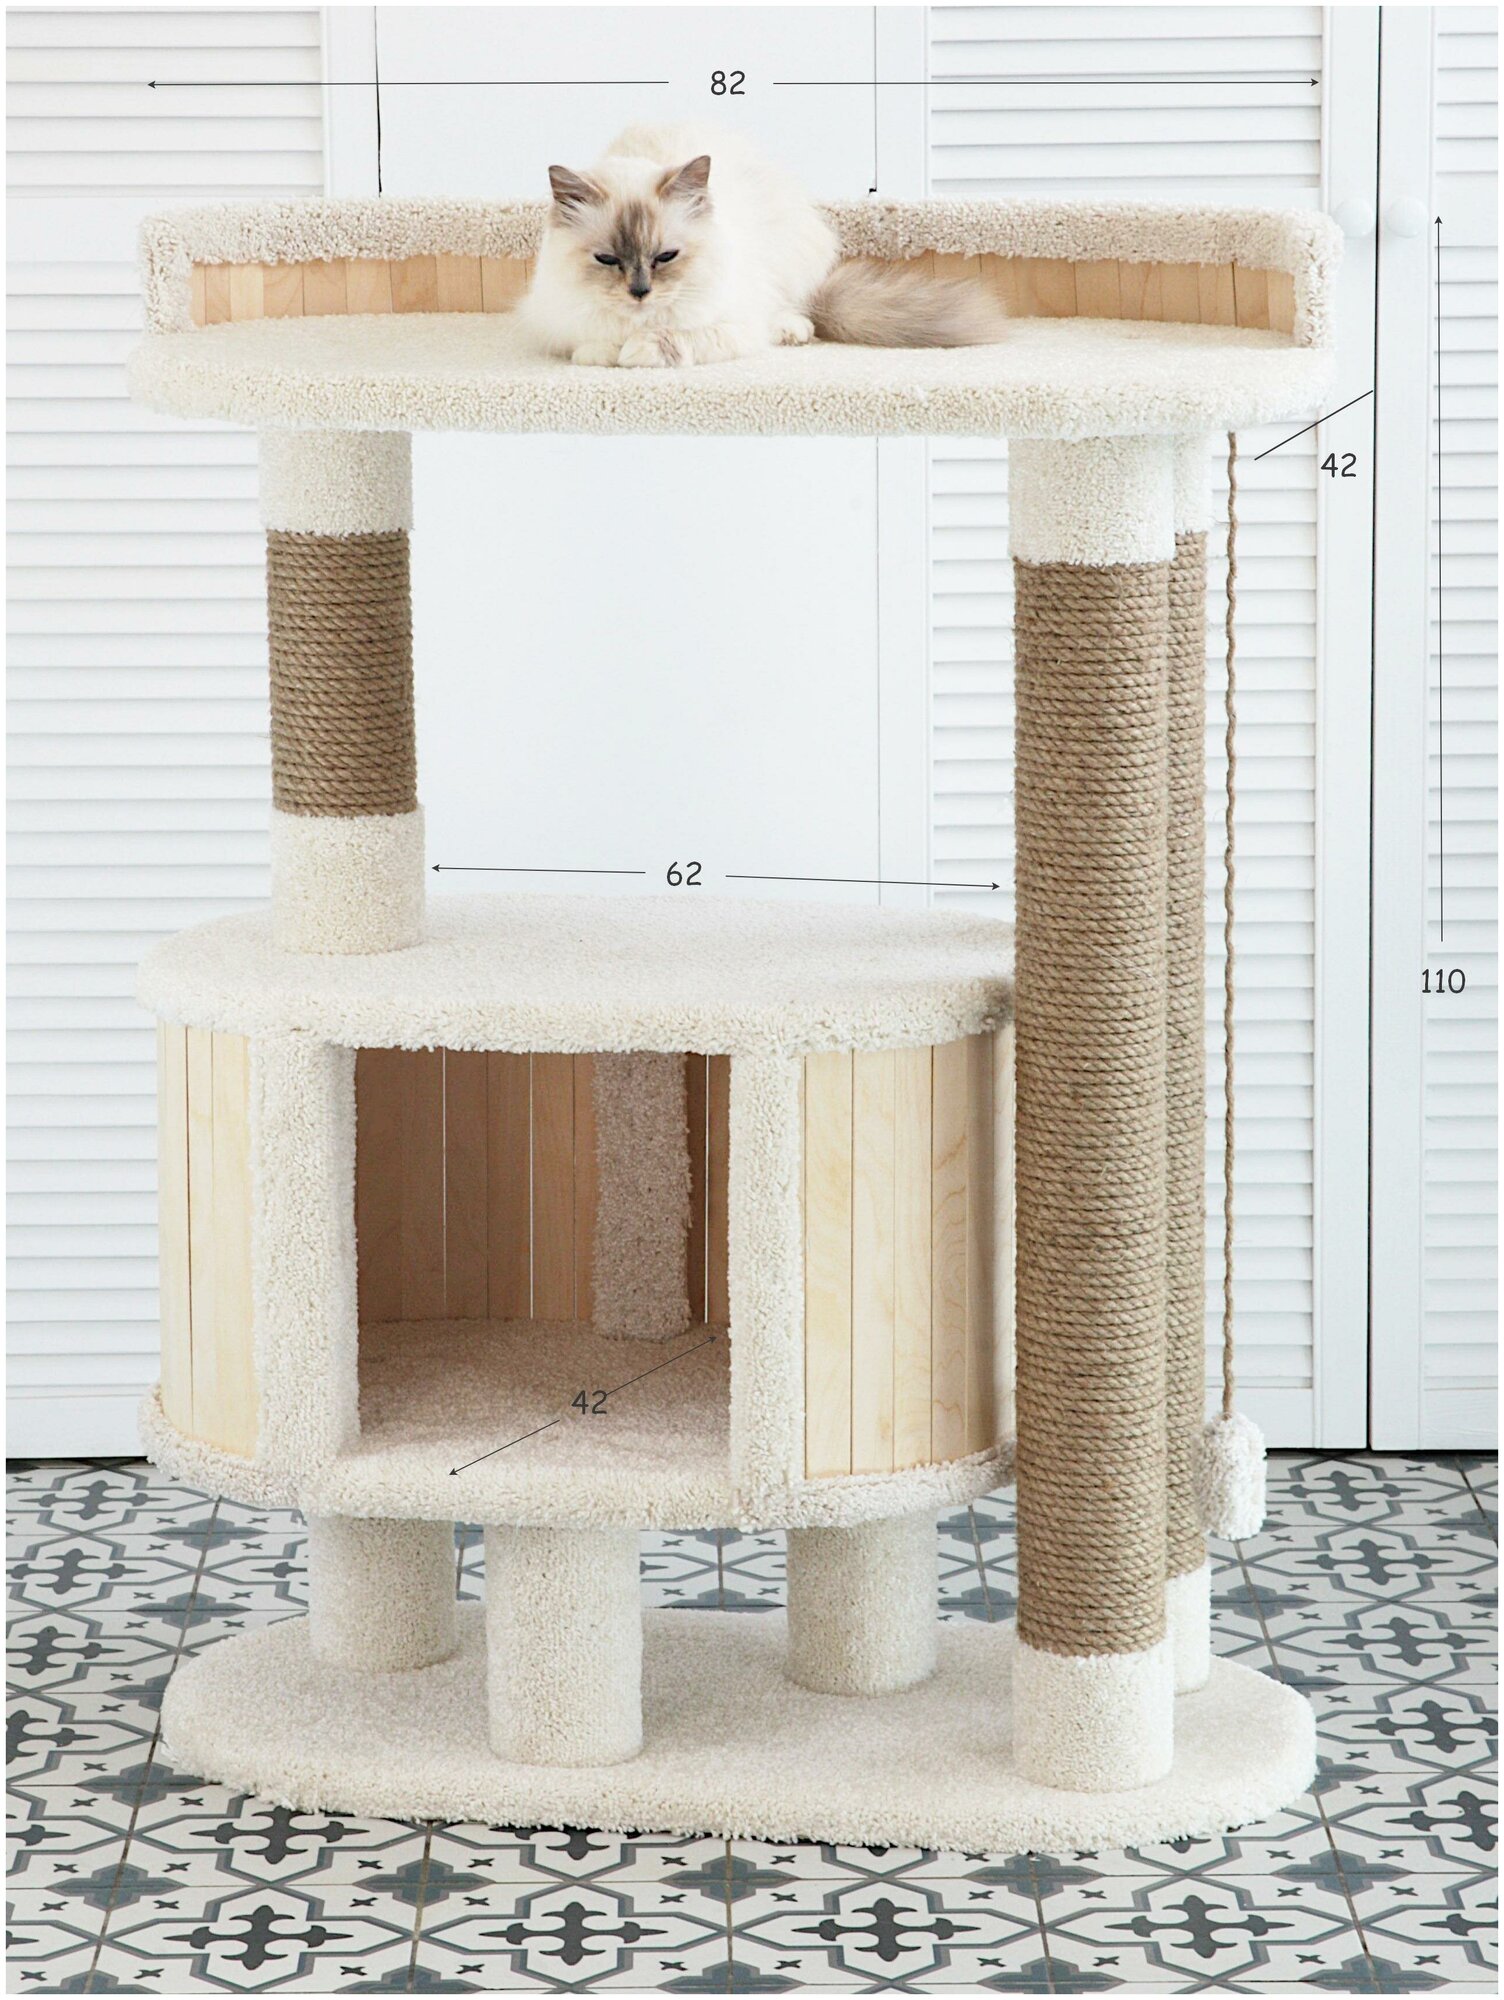 Домик для кошки Котомастер "Зара" высота 110см, основание 82х42см, ваниль